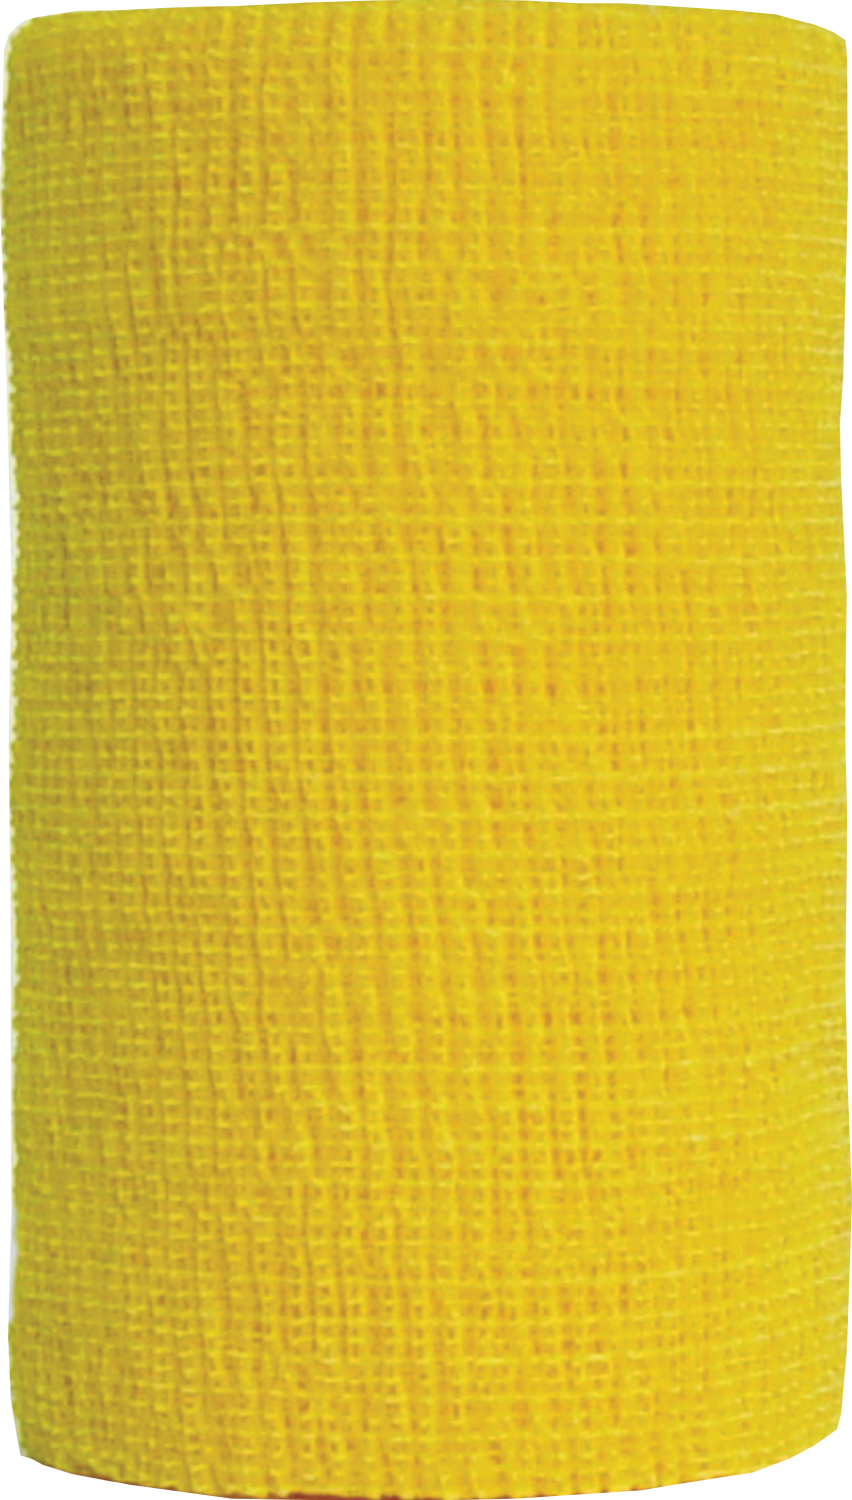 Co-Flex 4" x 5 yd Bandage Yellow